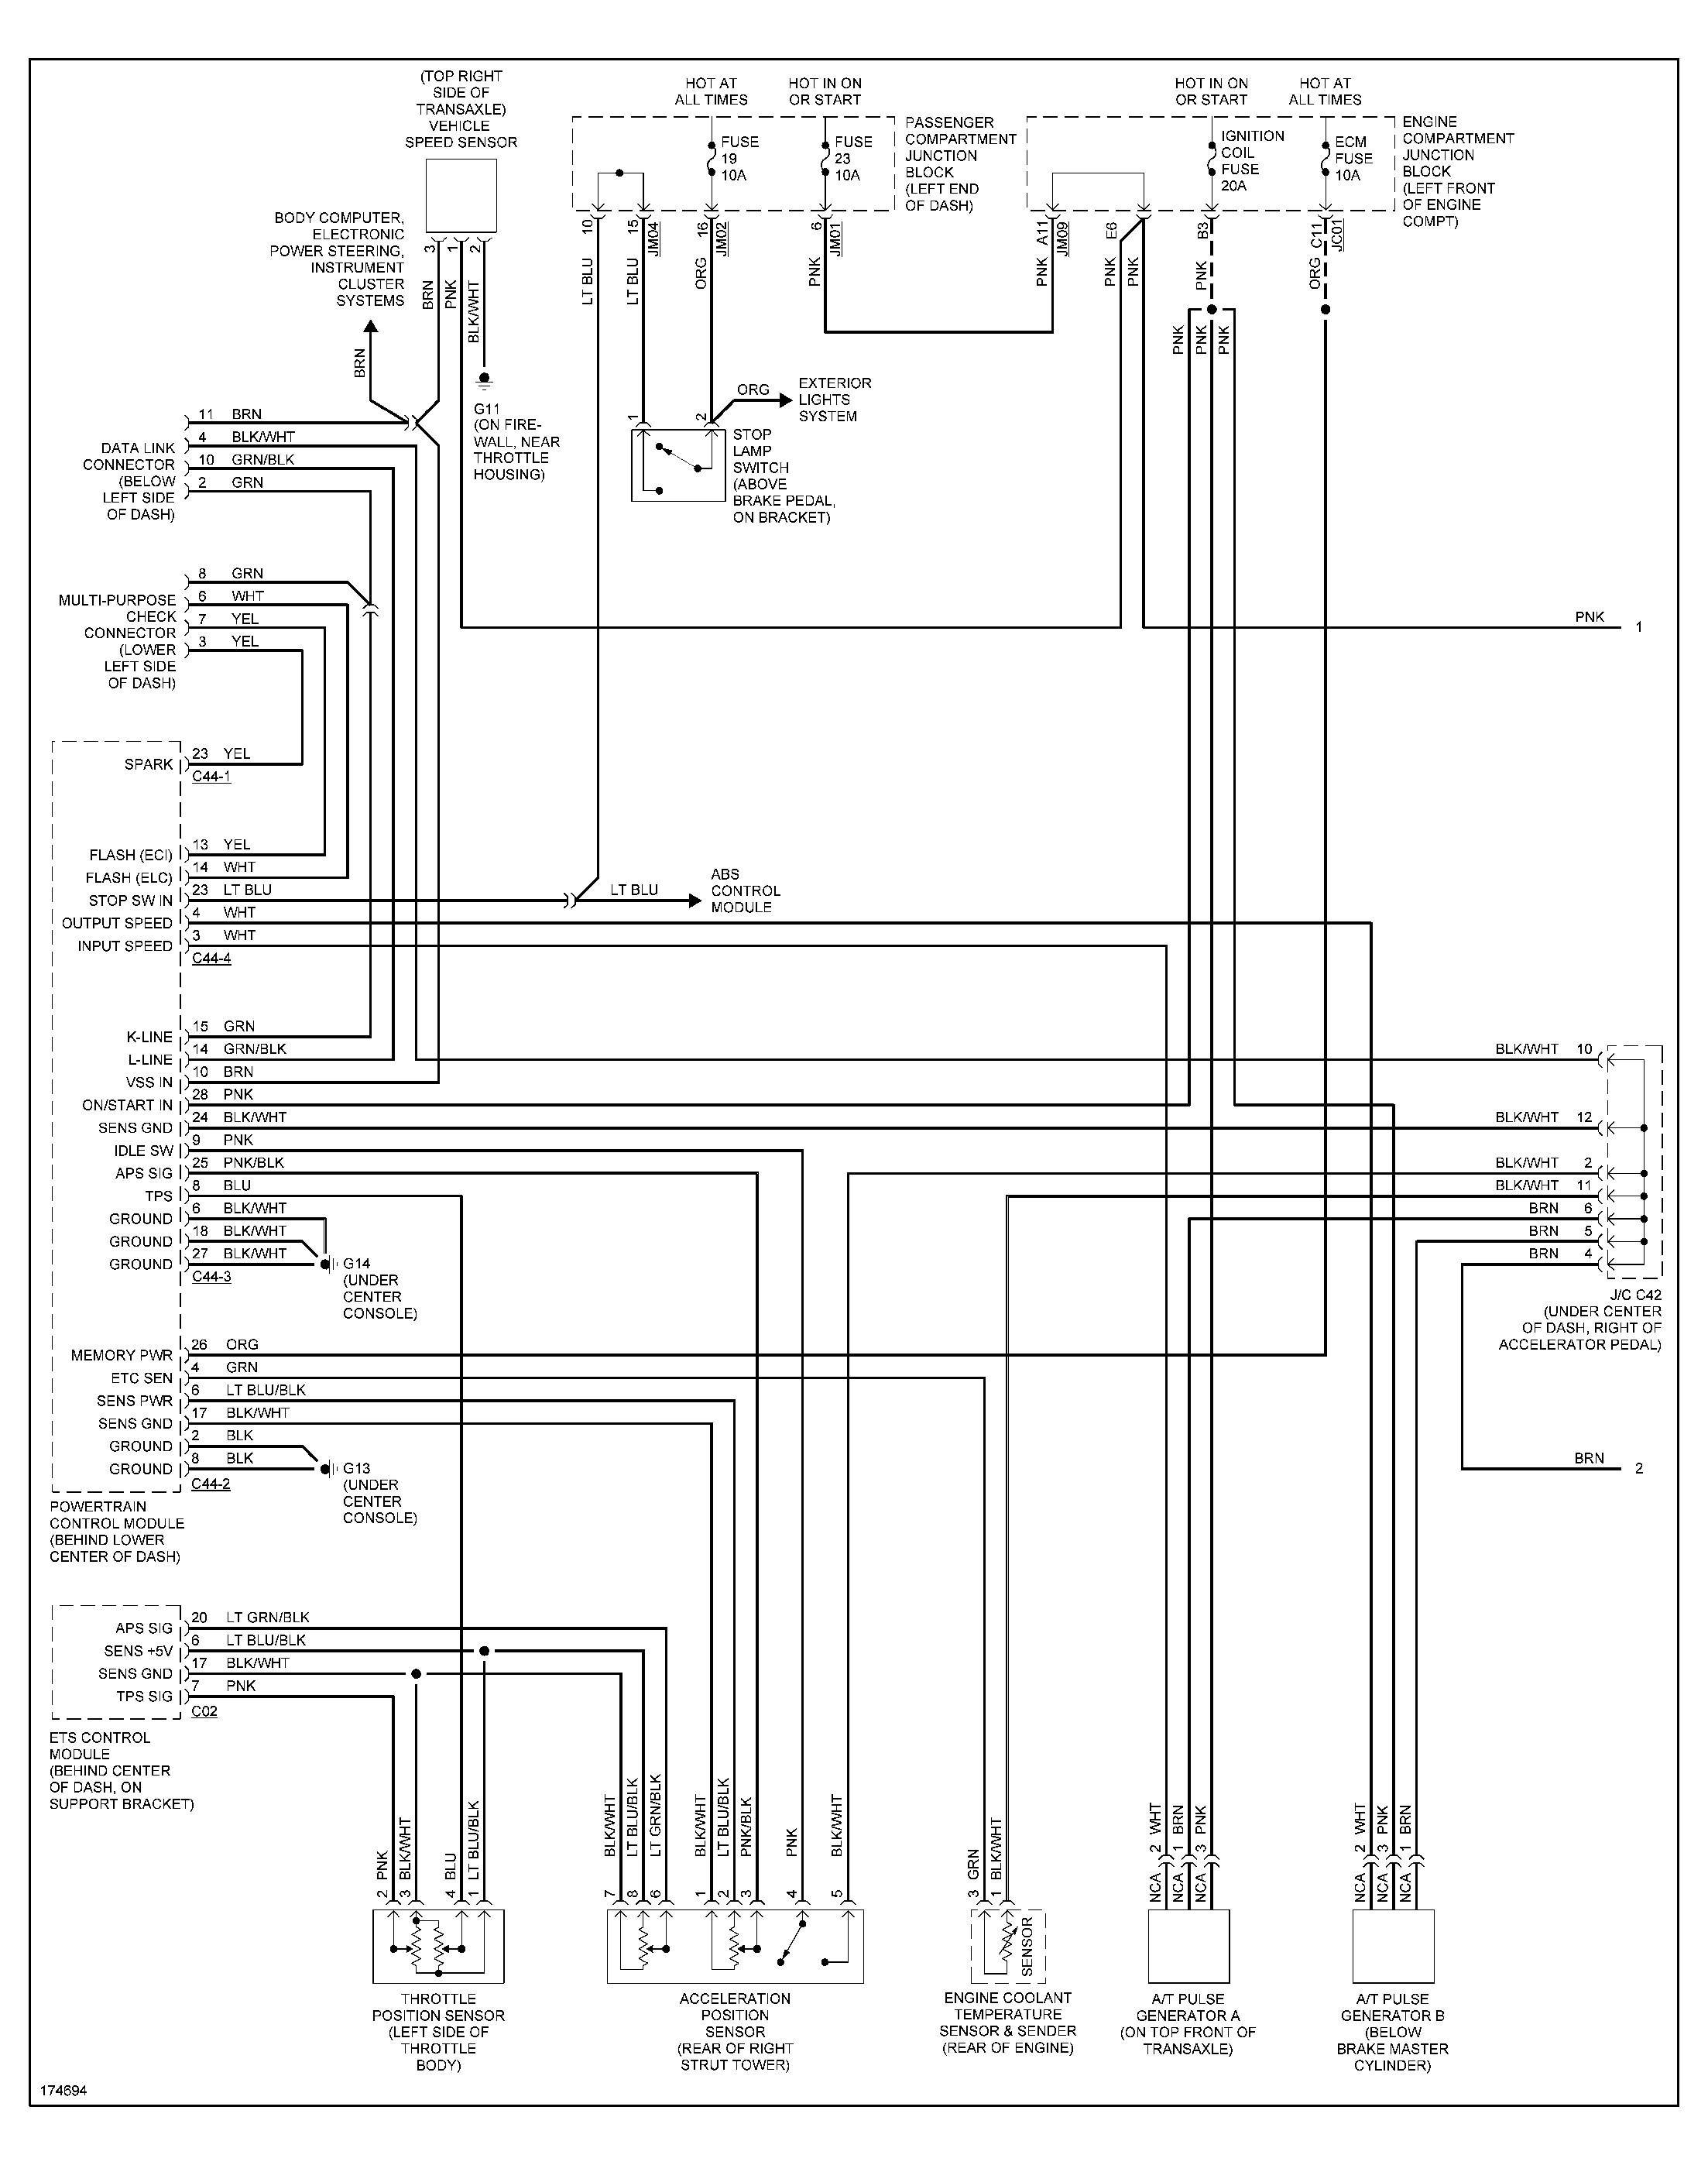 05 viking epic 1906 wiring diagram